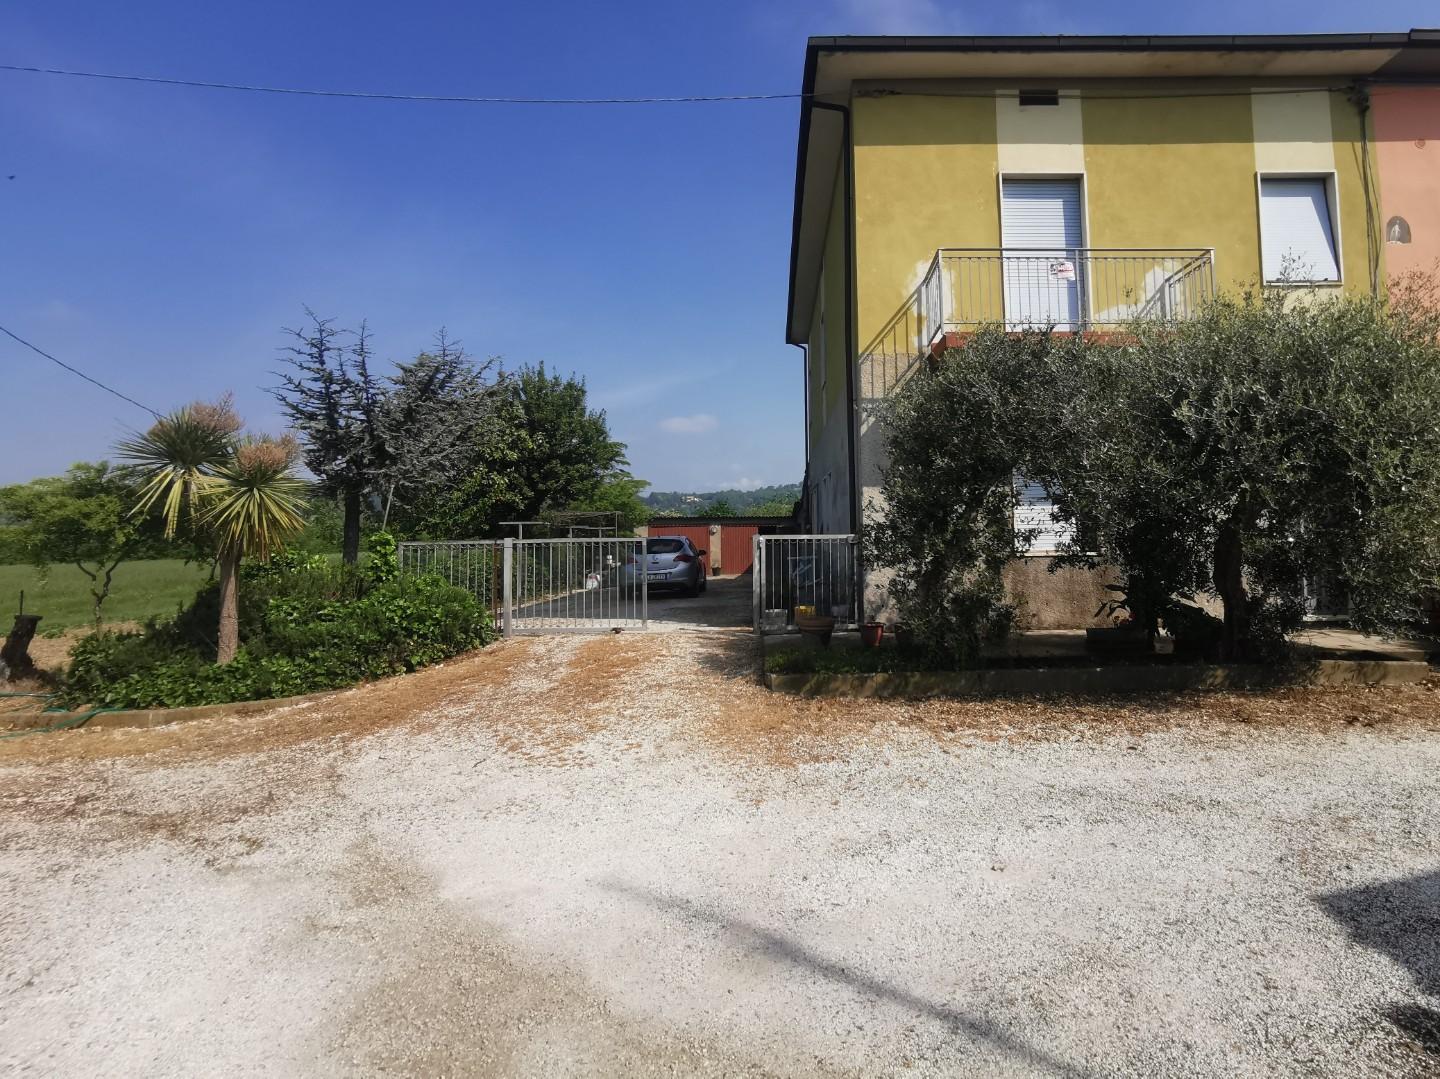 Porzione di casa in vendita a Castelfranco di Sotto